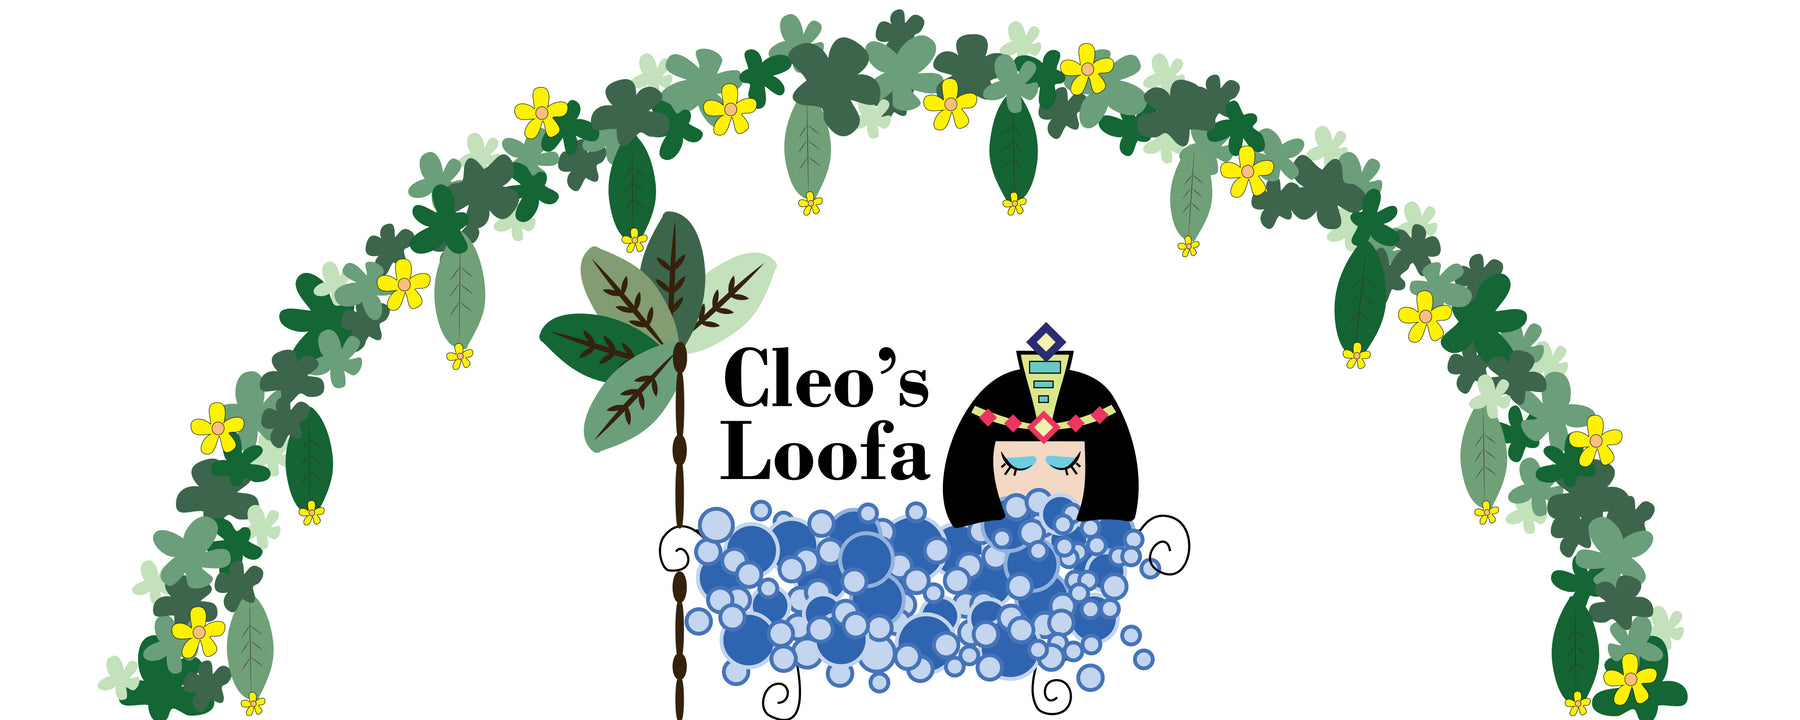 Cleo's Loofa